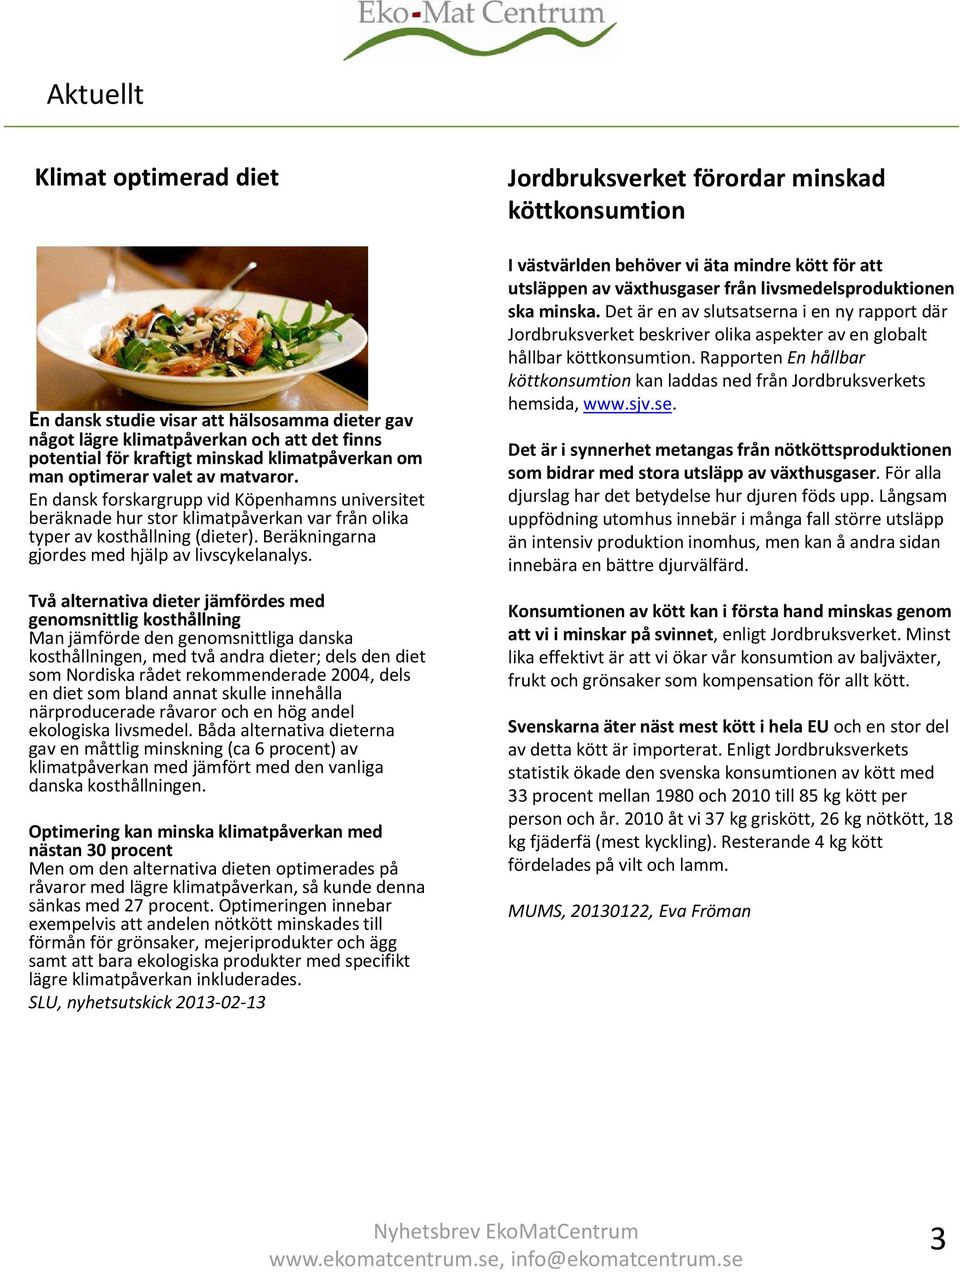 Två alternativa dieter jämfördes med genomsnittlig kosthållning Man jämförde den genomsnittliga danska kosthållningen, med två andra dieter; dels den diet som Nordiska rådet rekommenderade 2004, dels